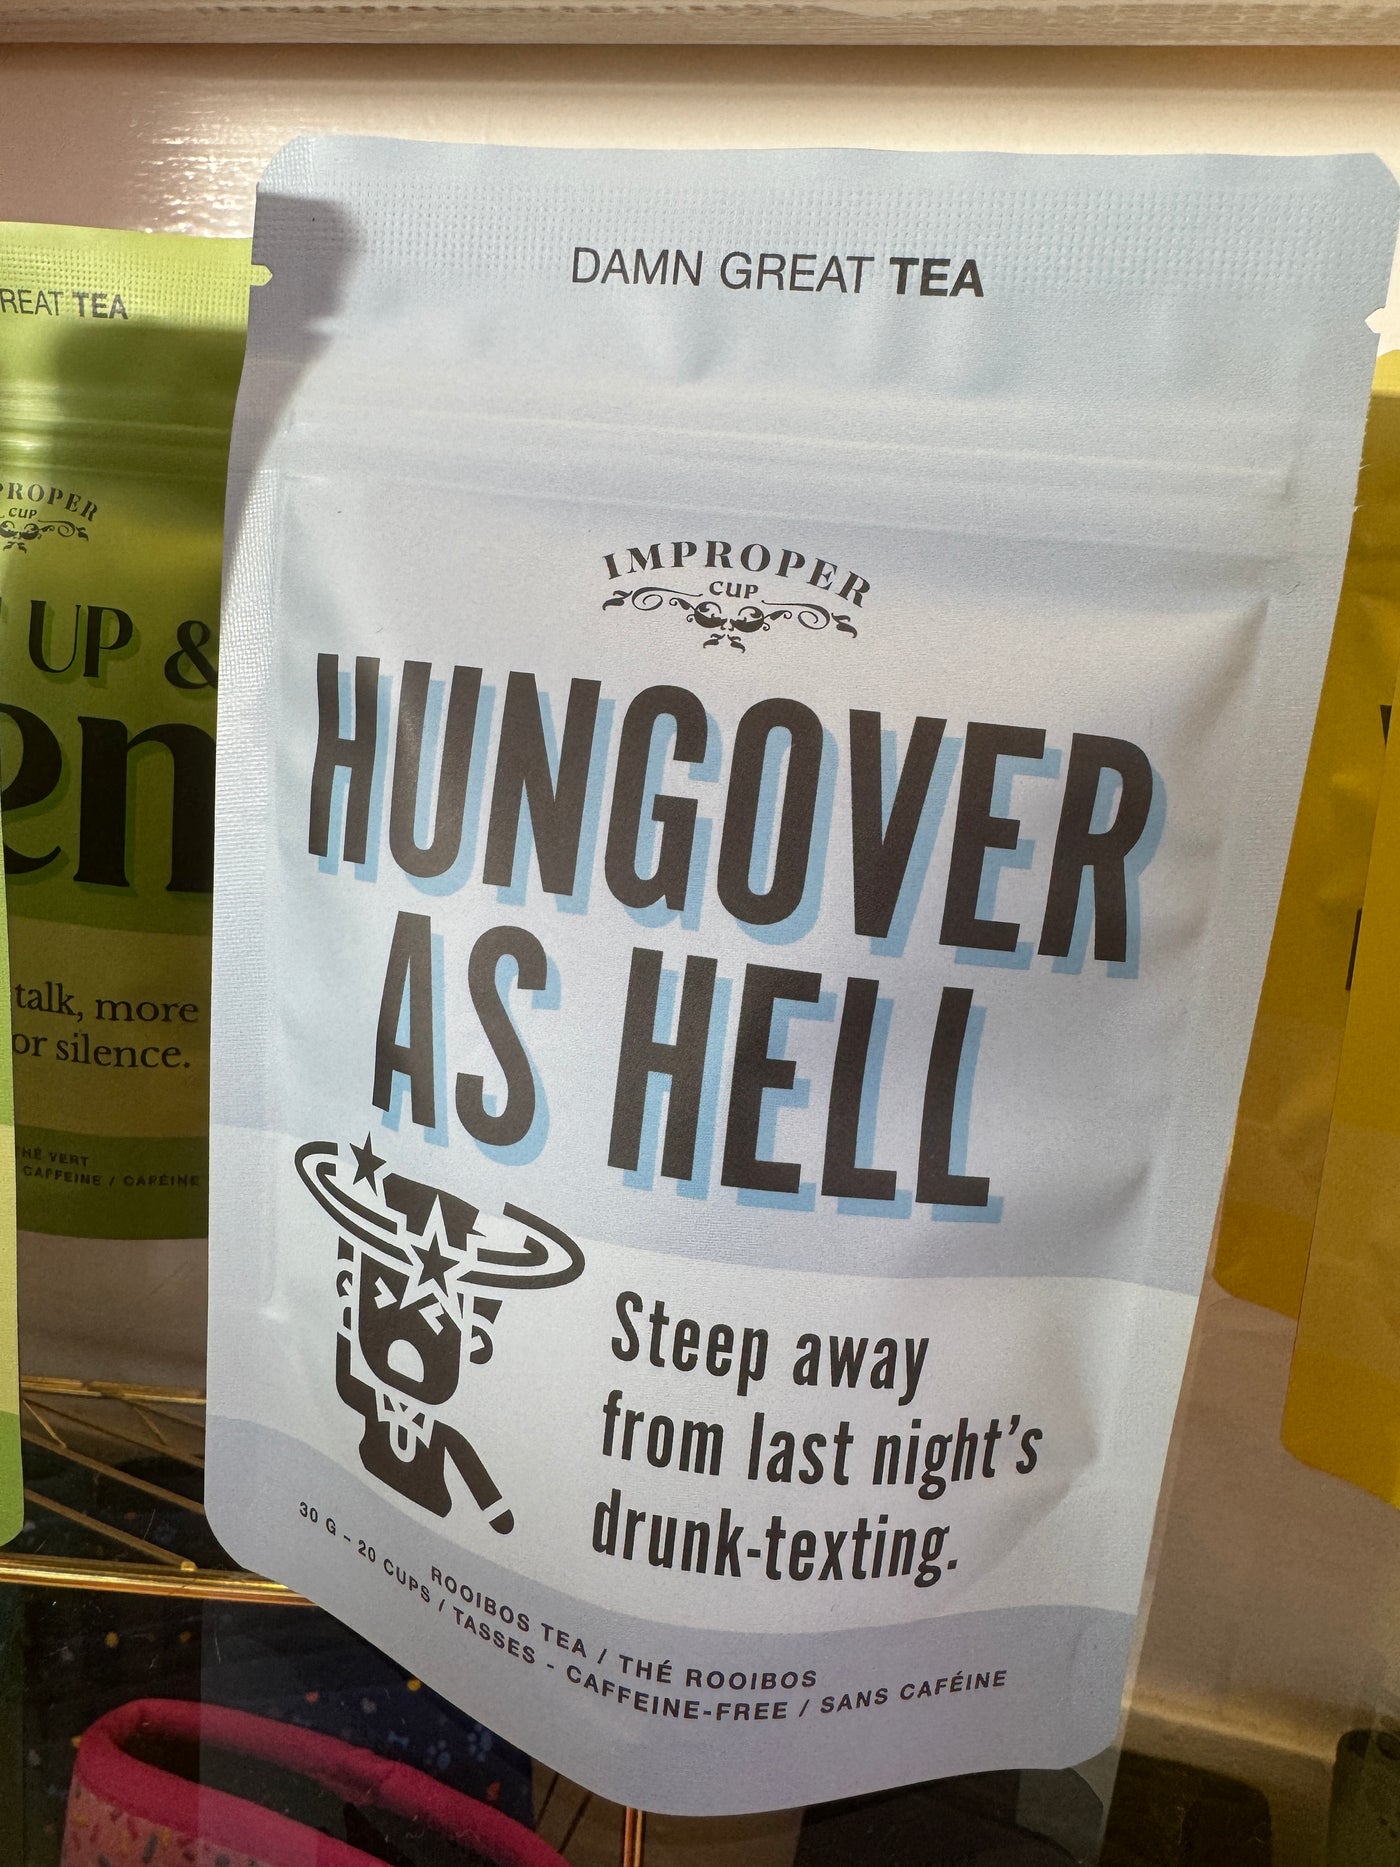 Hungover As Hell Tea